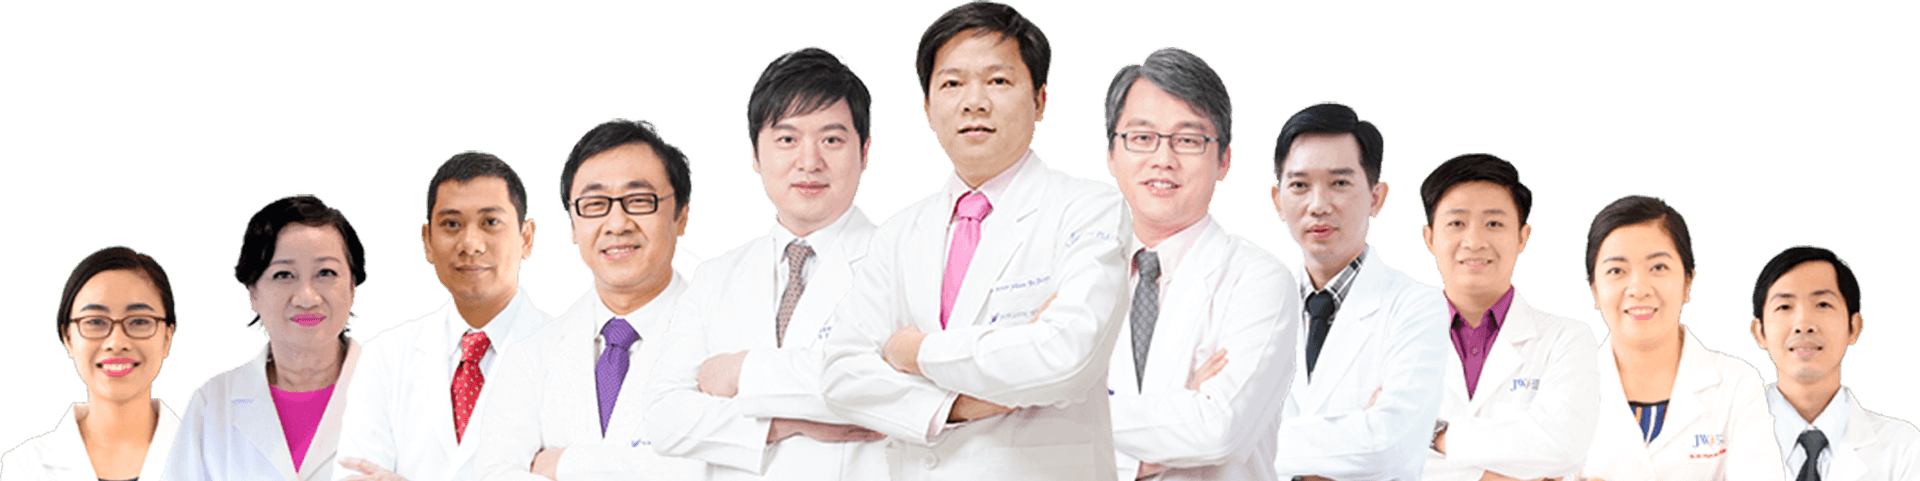 Đội ngũ Bác sĩ Bệnh viện Thẩm mỹ JW Hàn Quốc